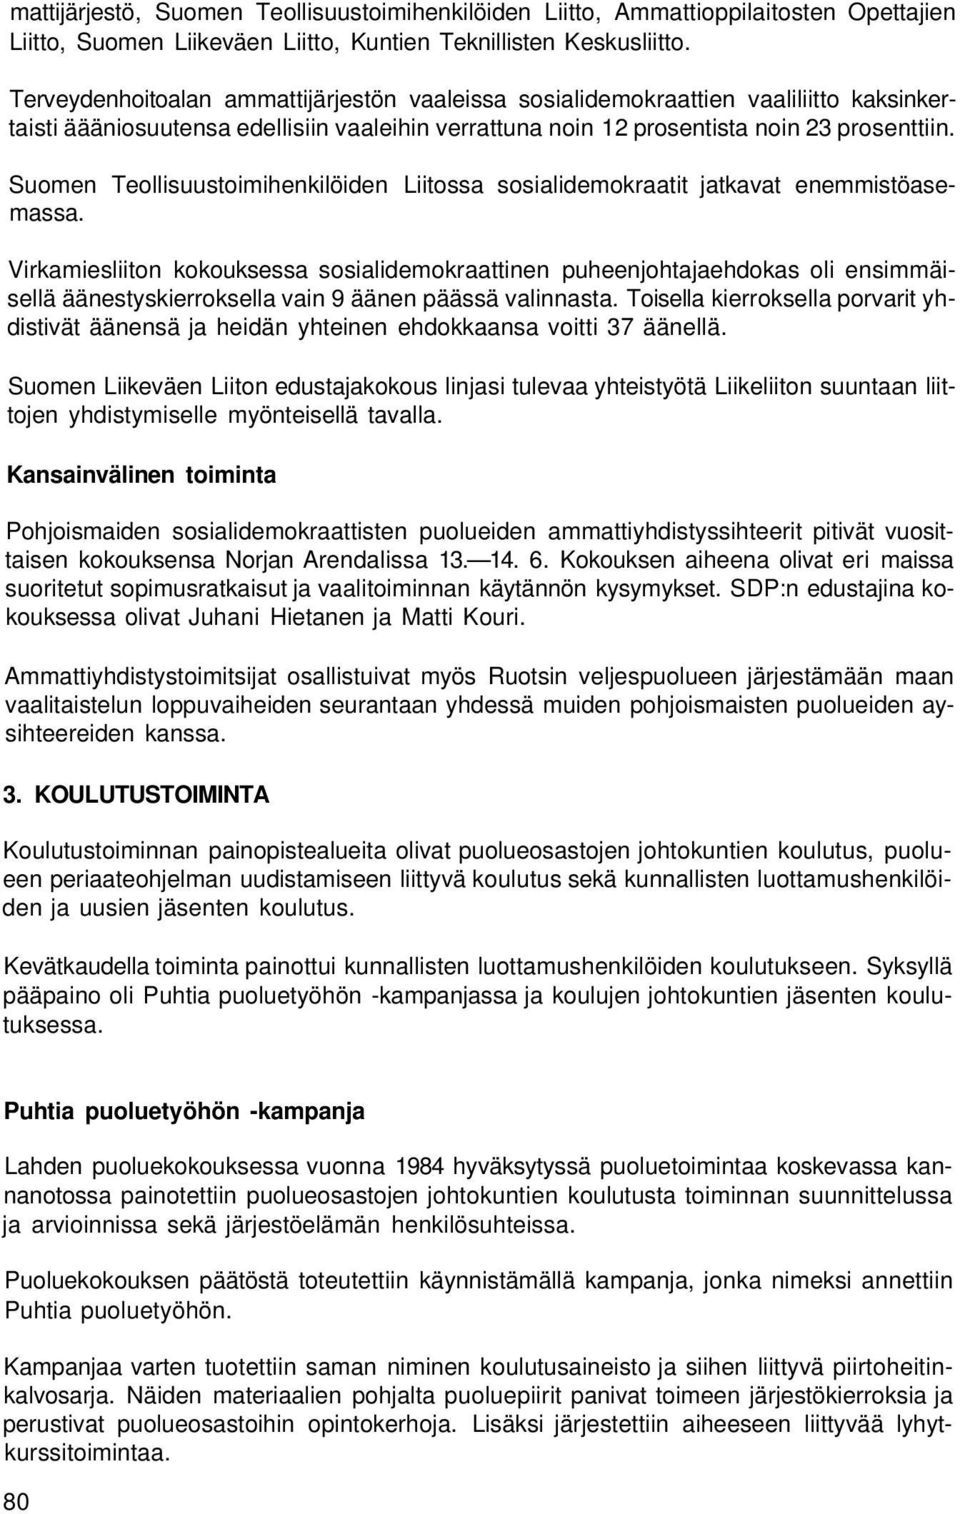 Suomen Teollisuustoimihenkilöiden Liitossa sosialidemokraatit jatkavat enemmistöasemassa.